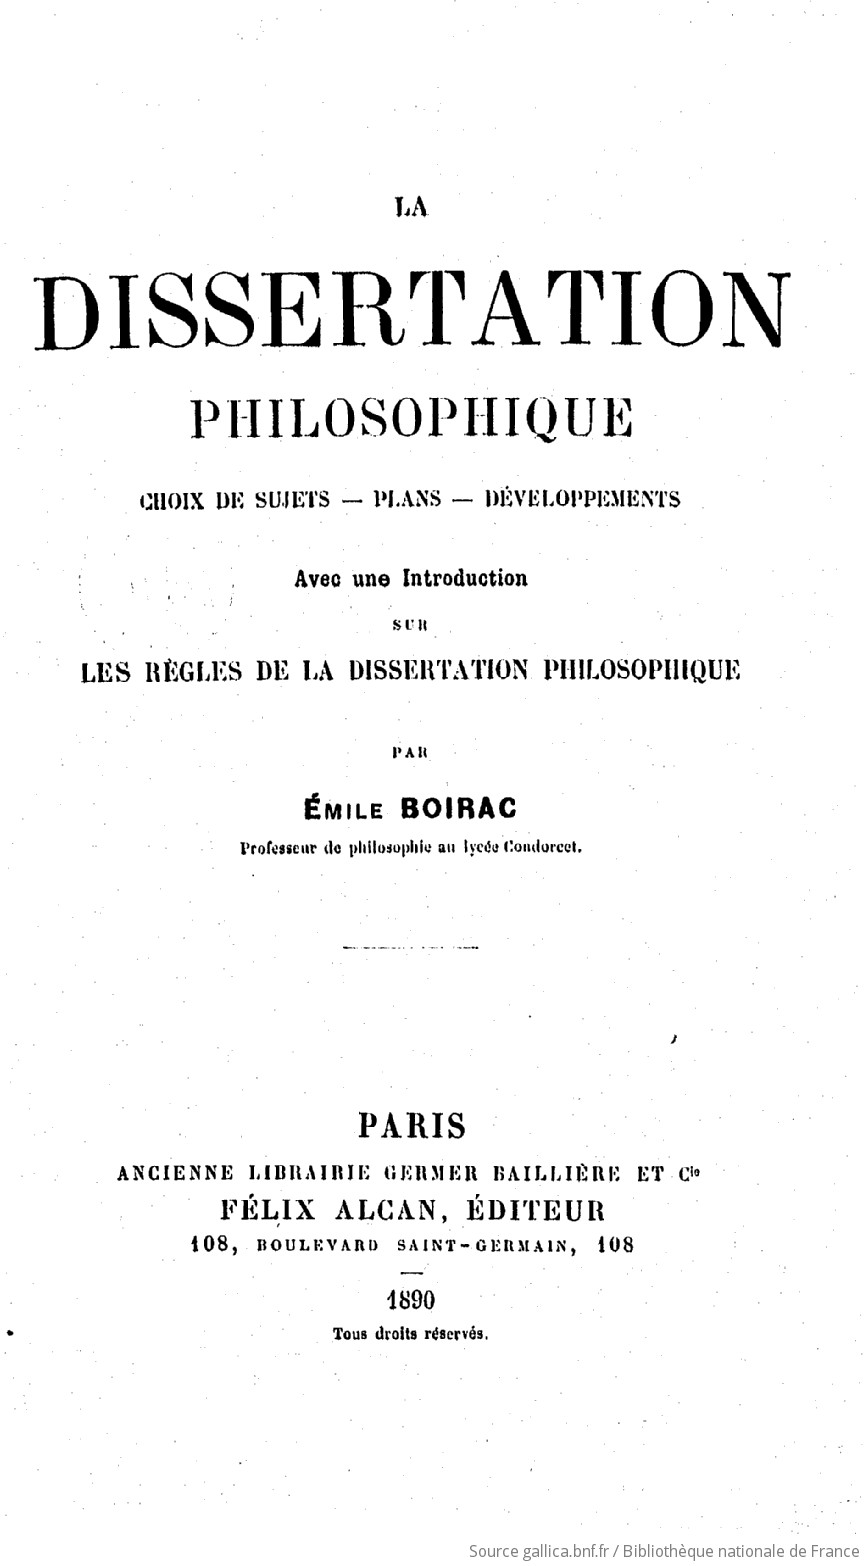 Dissertation philosophique